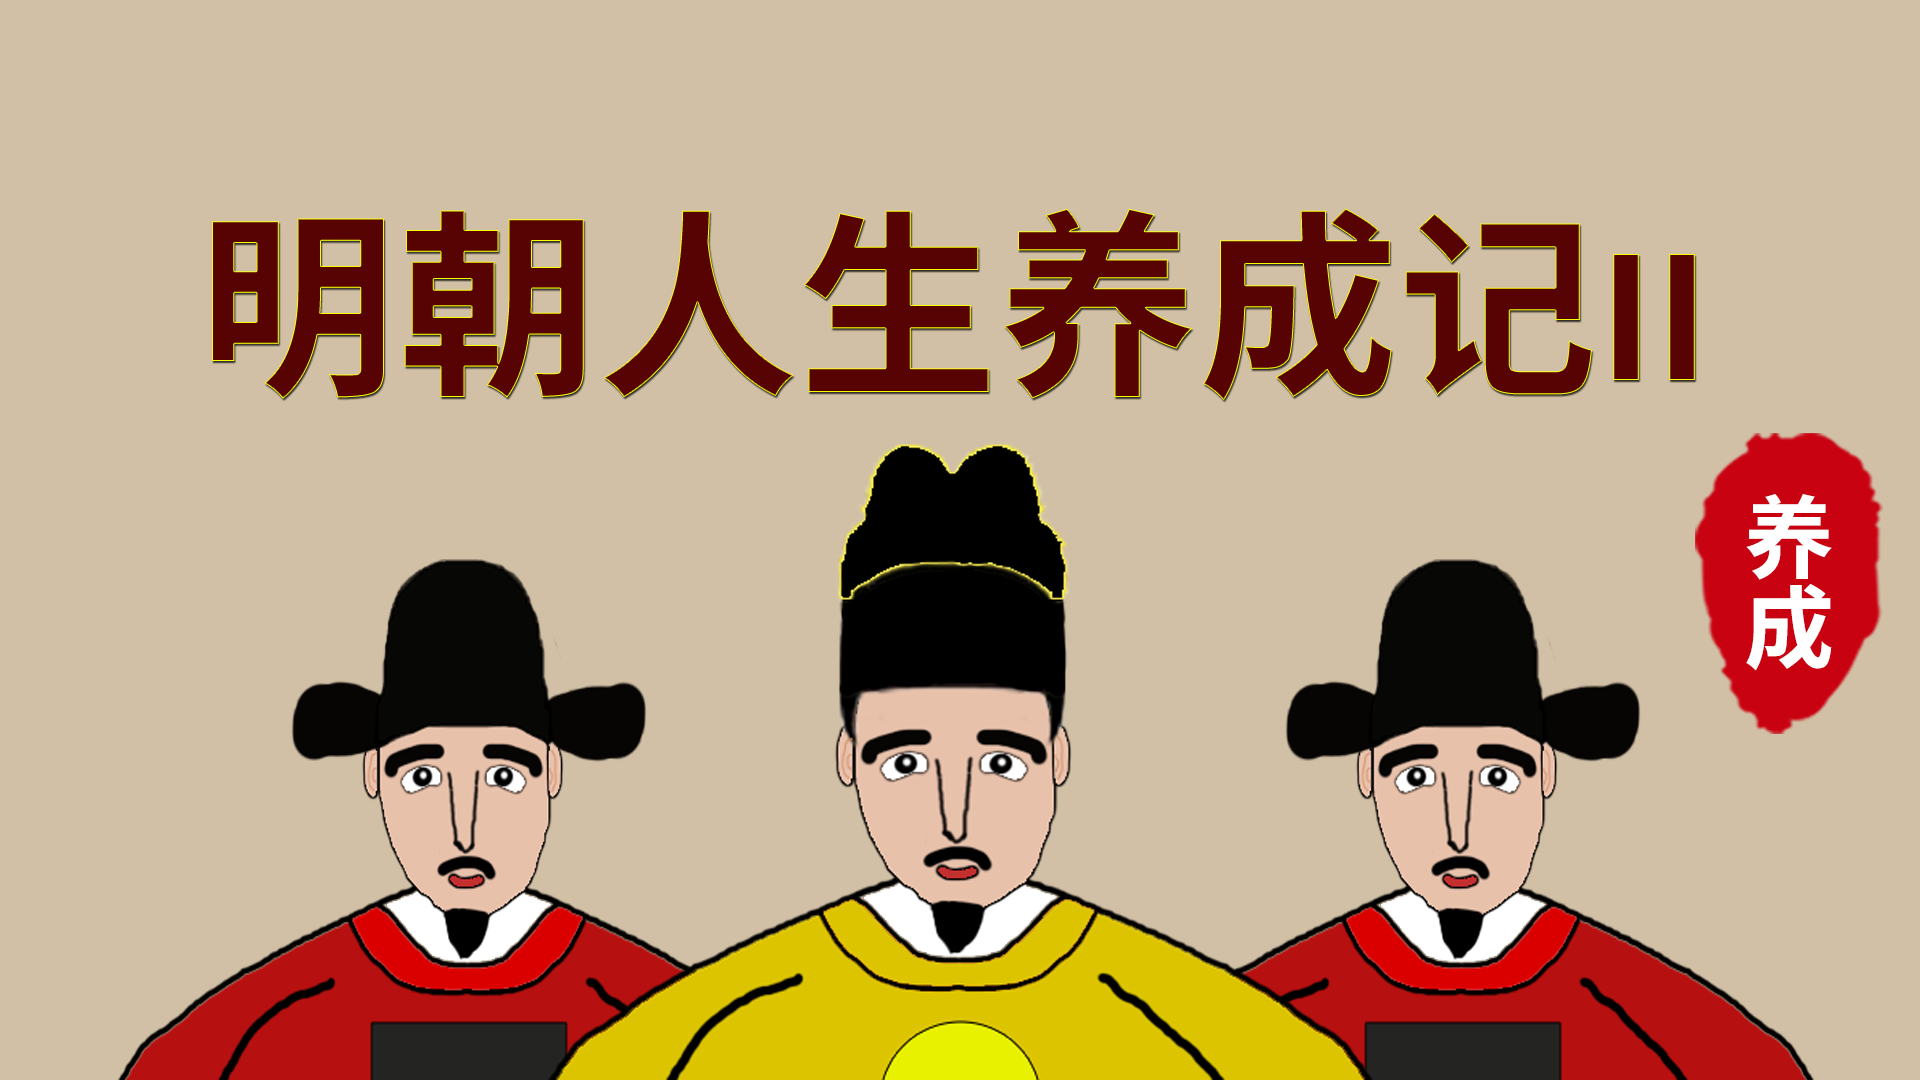 Banner of เรื่องราวการพัฒนาชีวิตราชวงศ์หมิง 2 